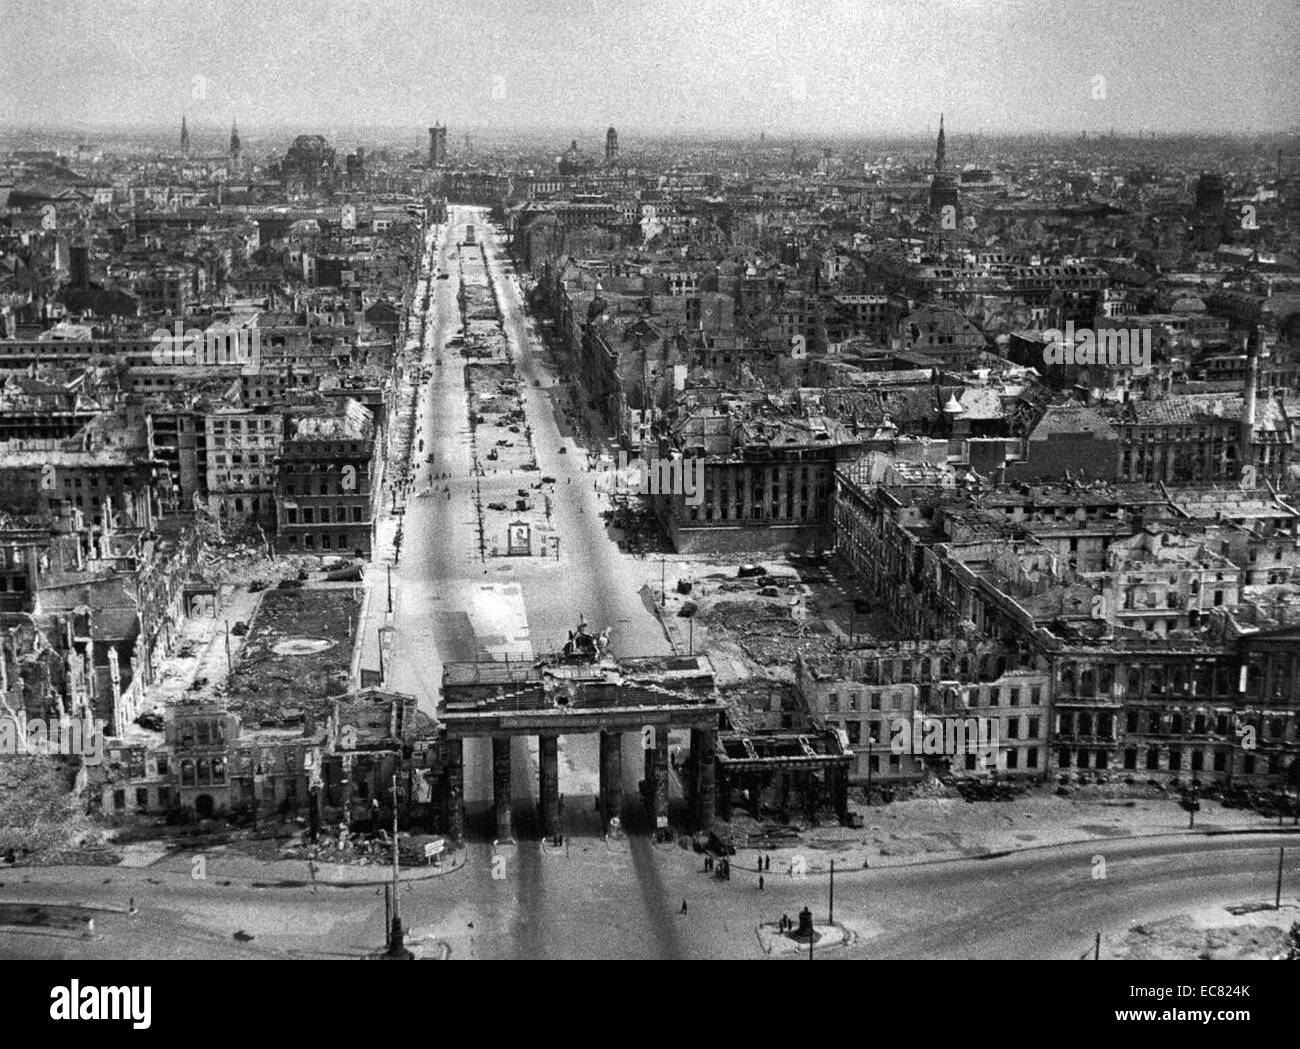 Bild zeigt Berlin am Ende des Zweiten Weltkrieges devistated. Die deutsche Stadt erlitt erbarmungslosen Luftangriffe der Alliierten Streitkräfte im Jahr 1945. Stockfoto